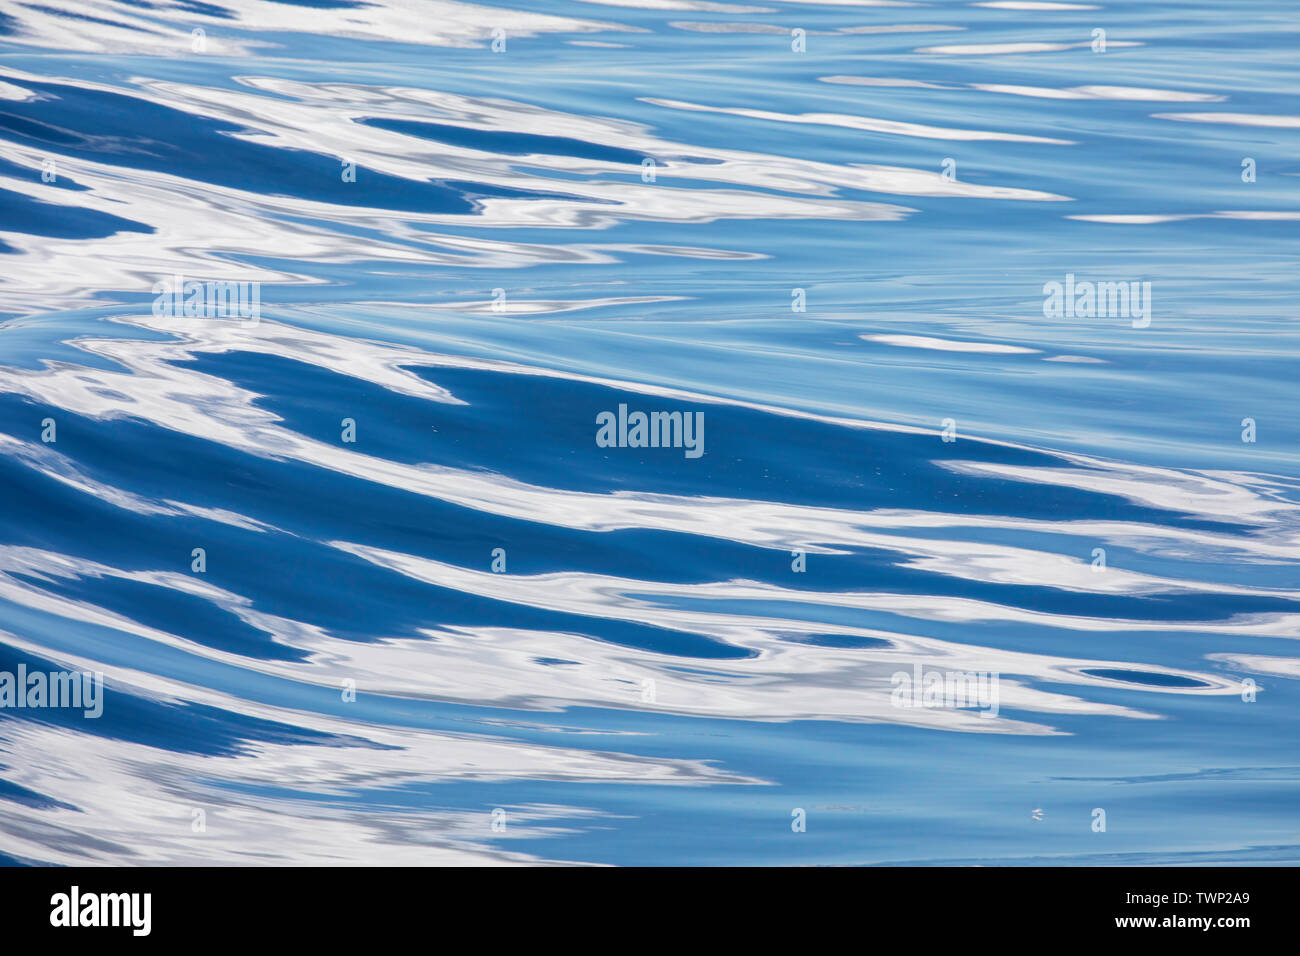 Dies ist ein ruhiger Tag am Pazifischen Ozean mit blauem Himmel und Wolken reflektiert dieses abstrakte Bild zu machen. Stockfoto